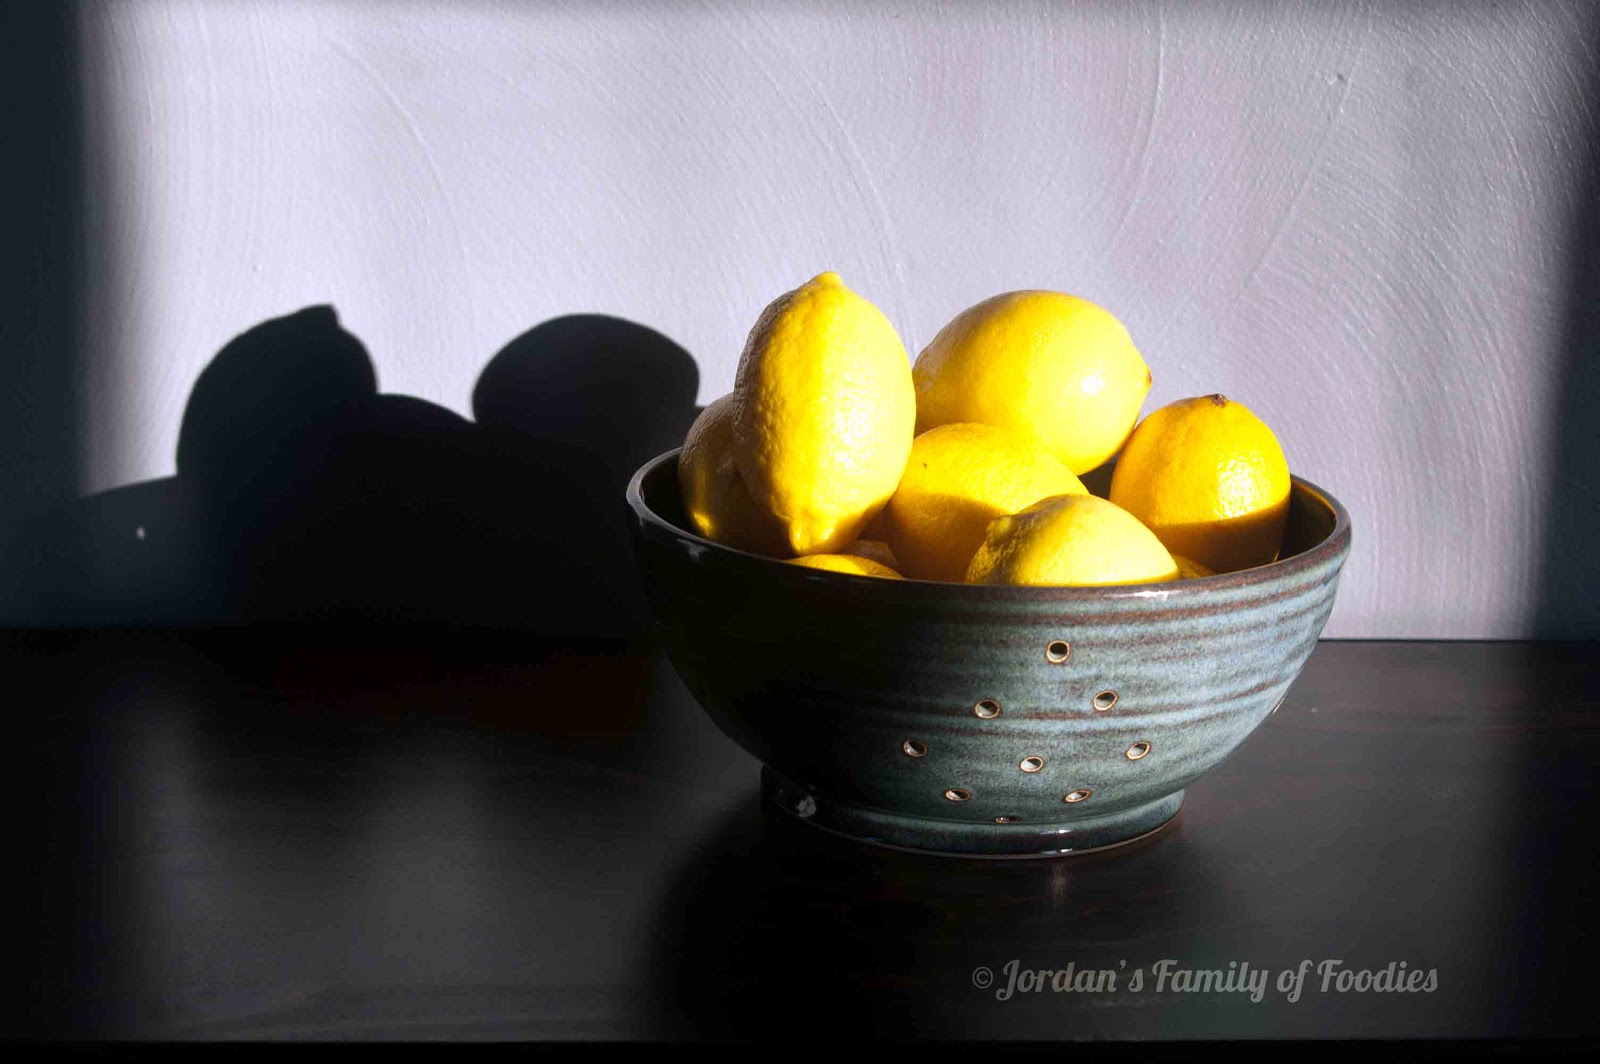 Jordan's Family of Foodies: Lemon Bars